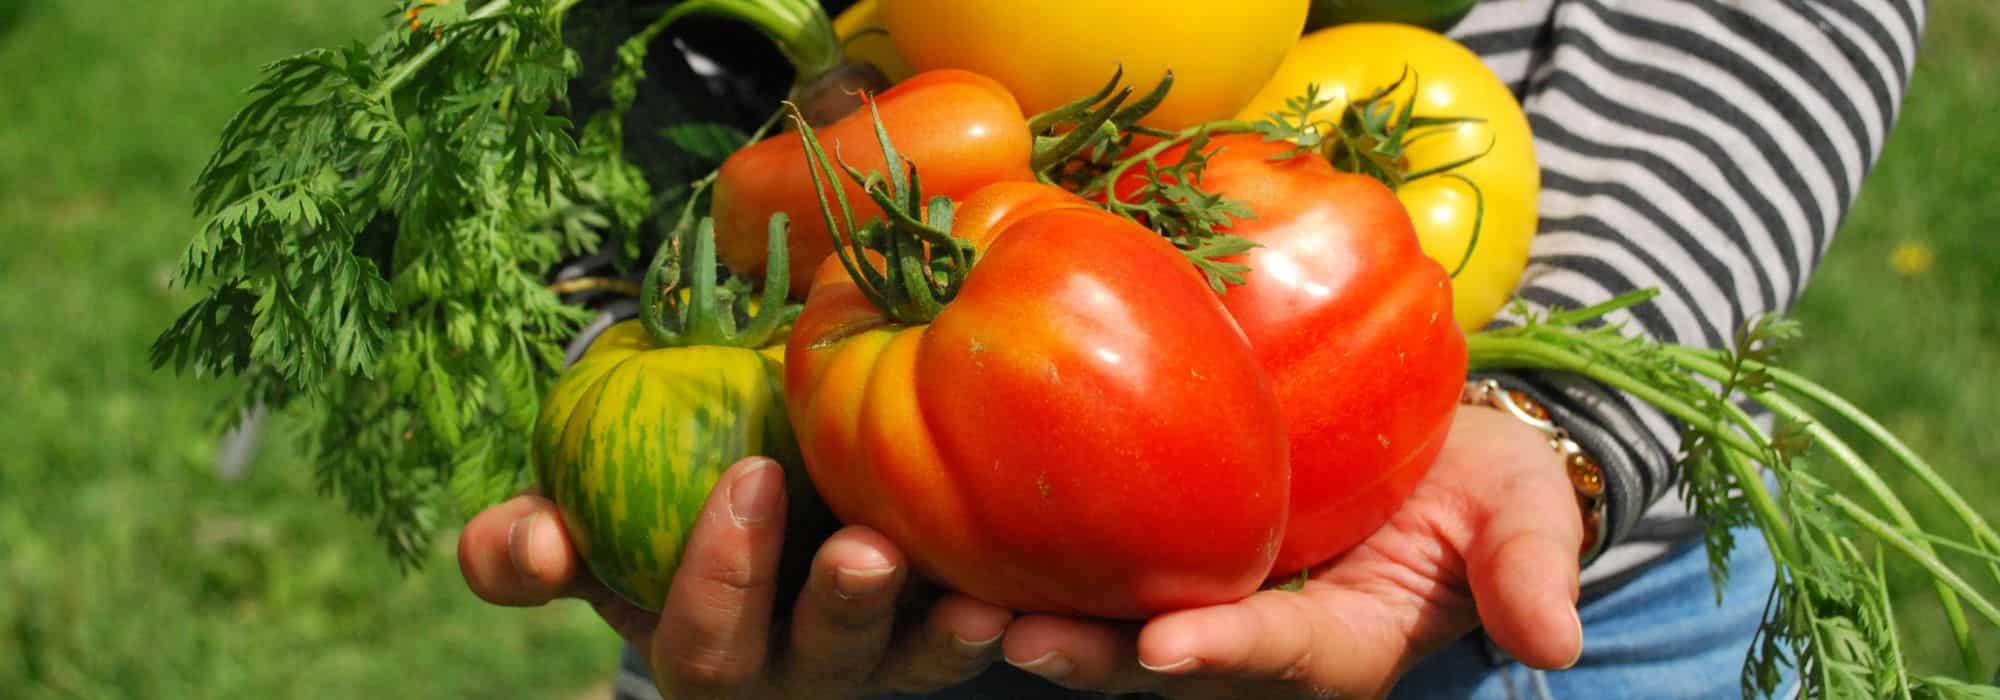 Cultivez votre propre potager : mangez sainement et économisez de l'argent